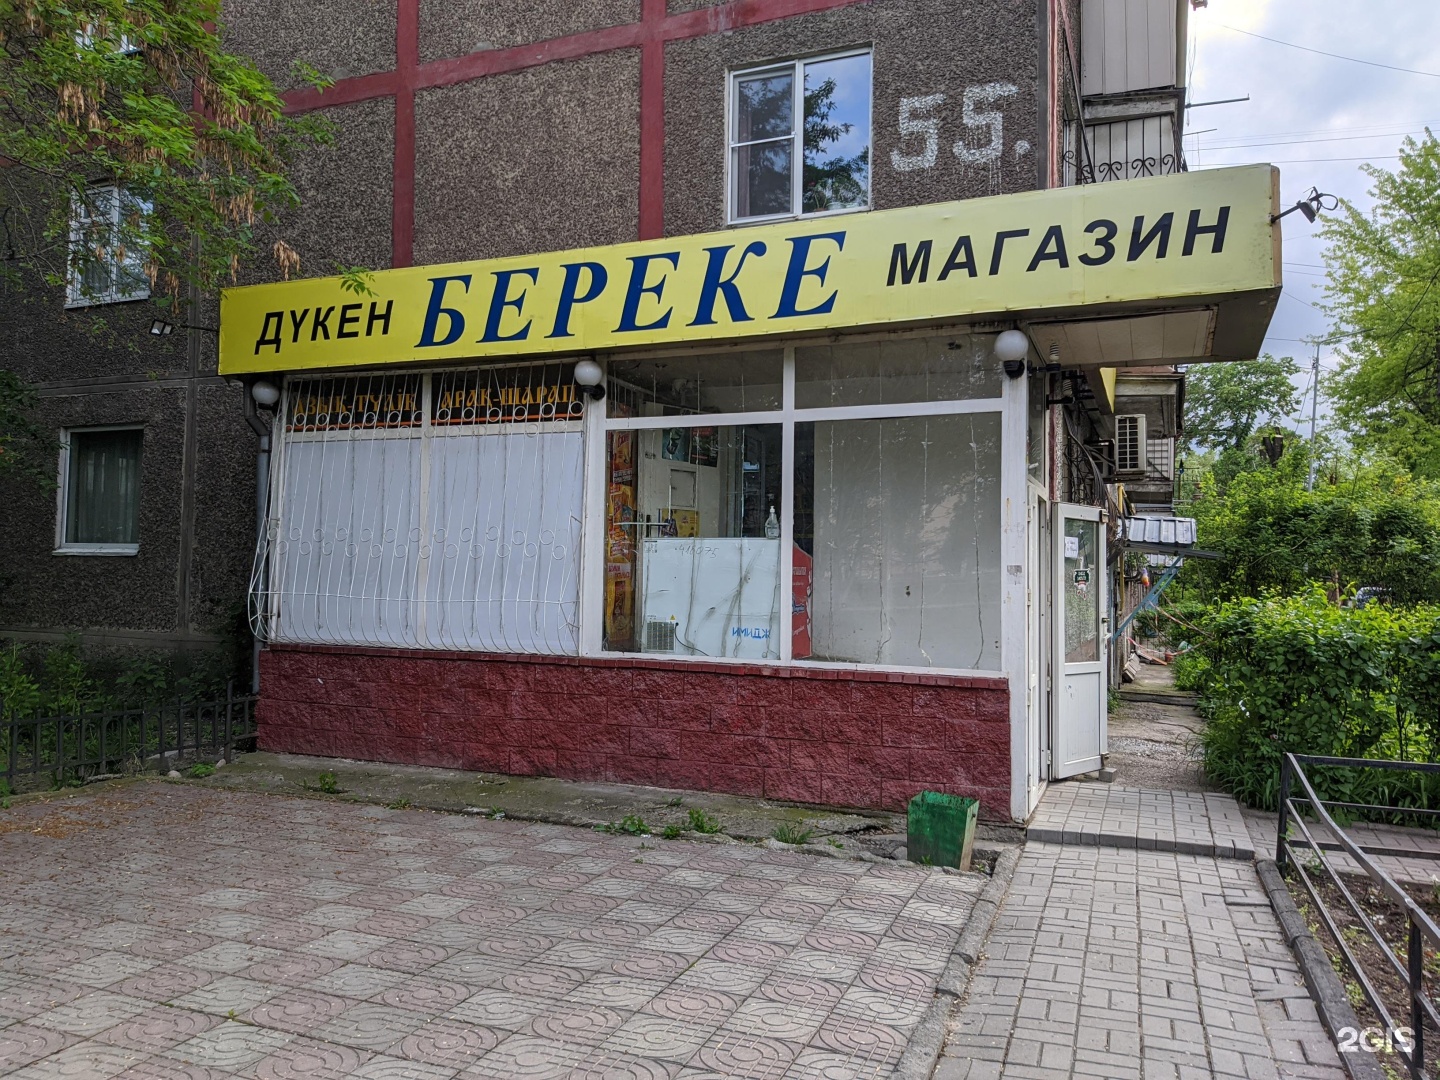 Сайт береке банка казахстана. Береке магазин. Продуктовый магазин Береке. Магазин Береке Алматы.